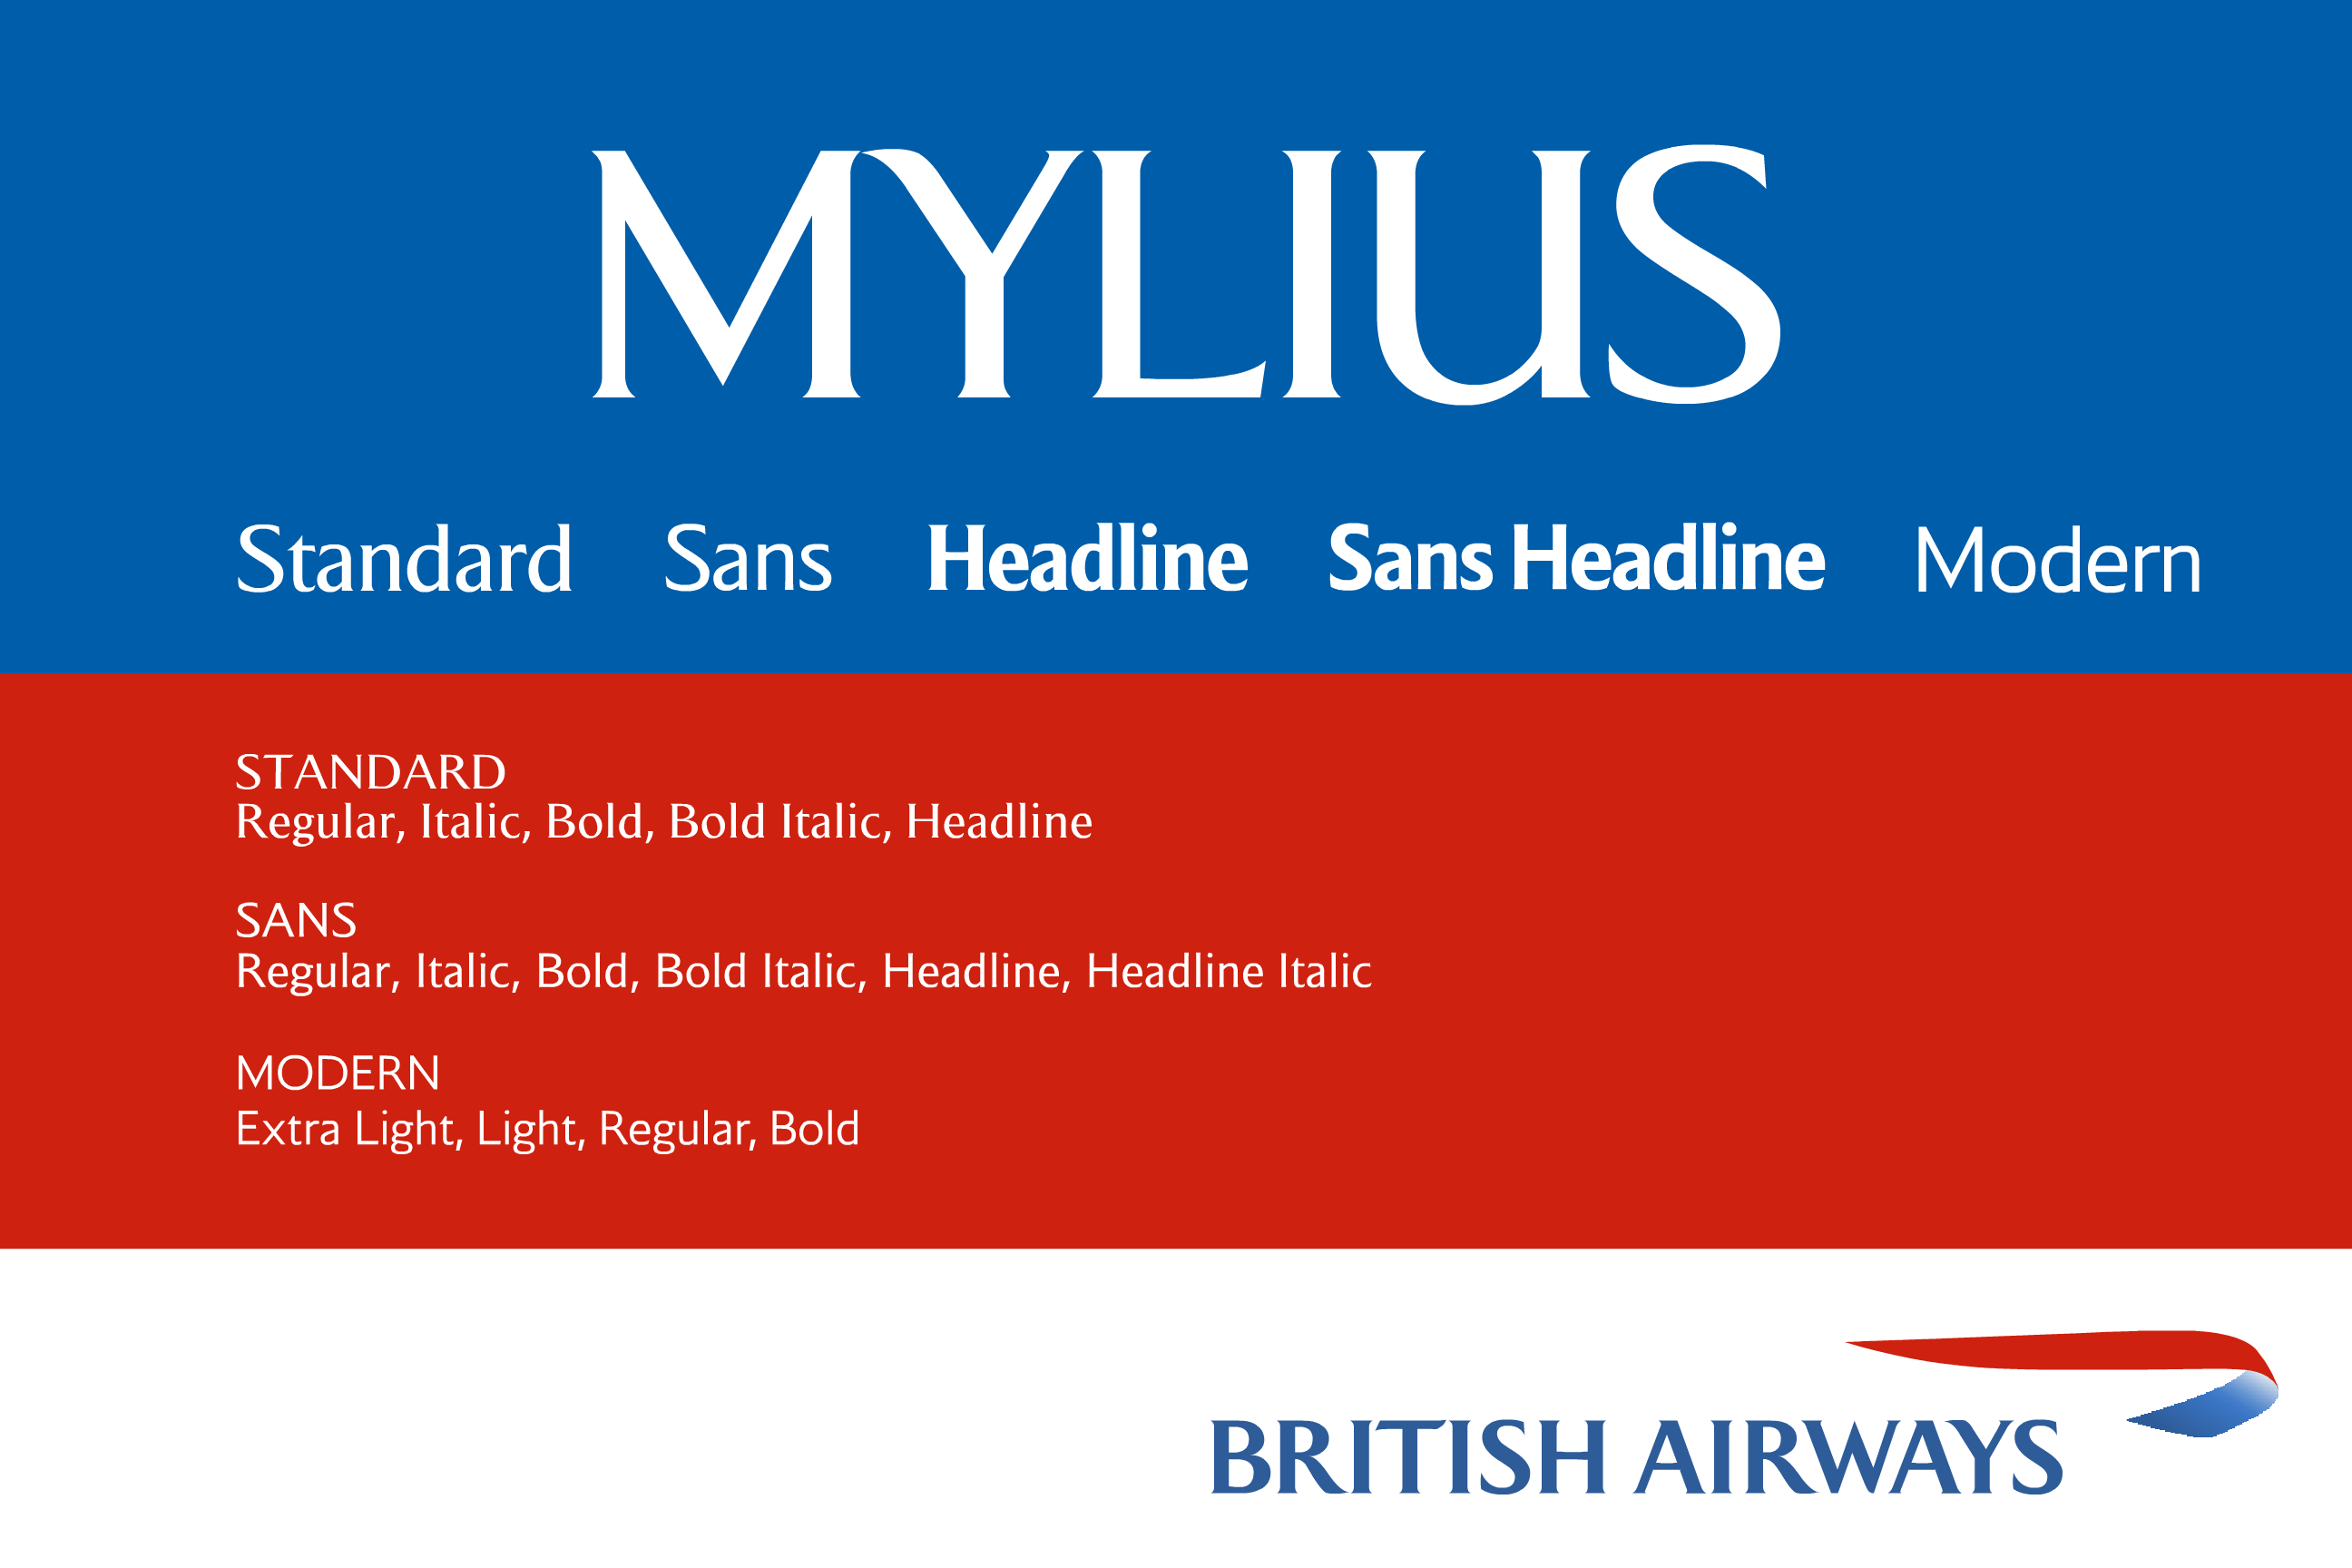 Police Mylius Modern (British Airways)